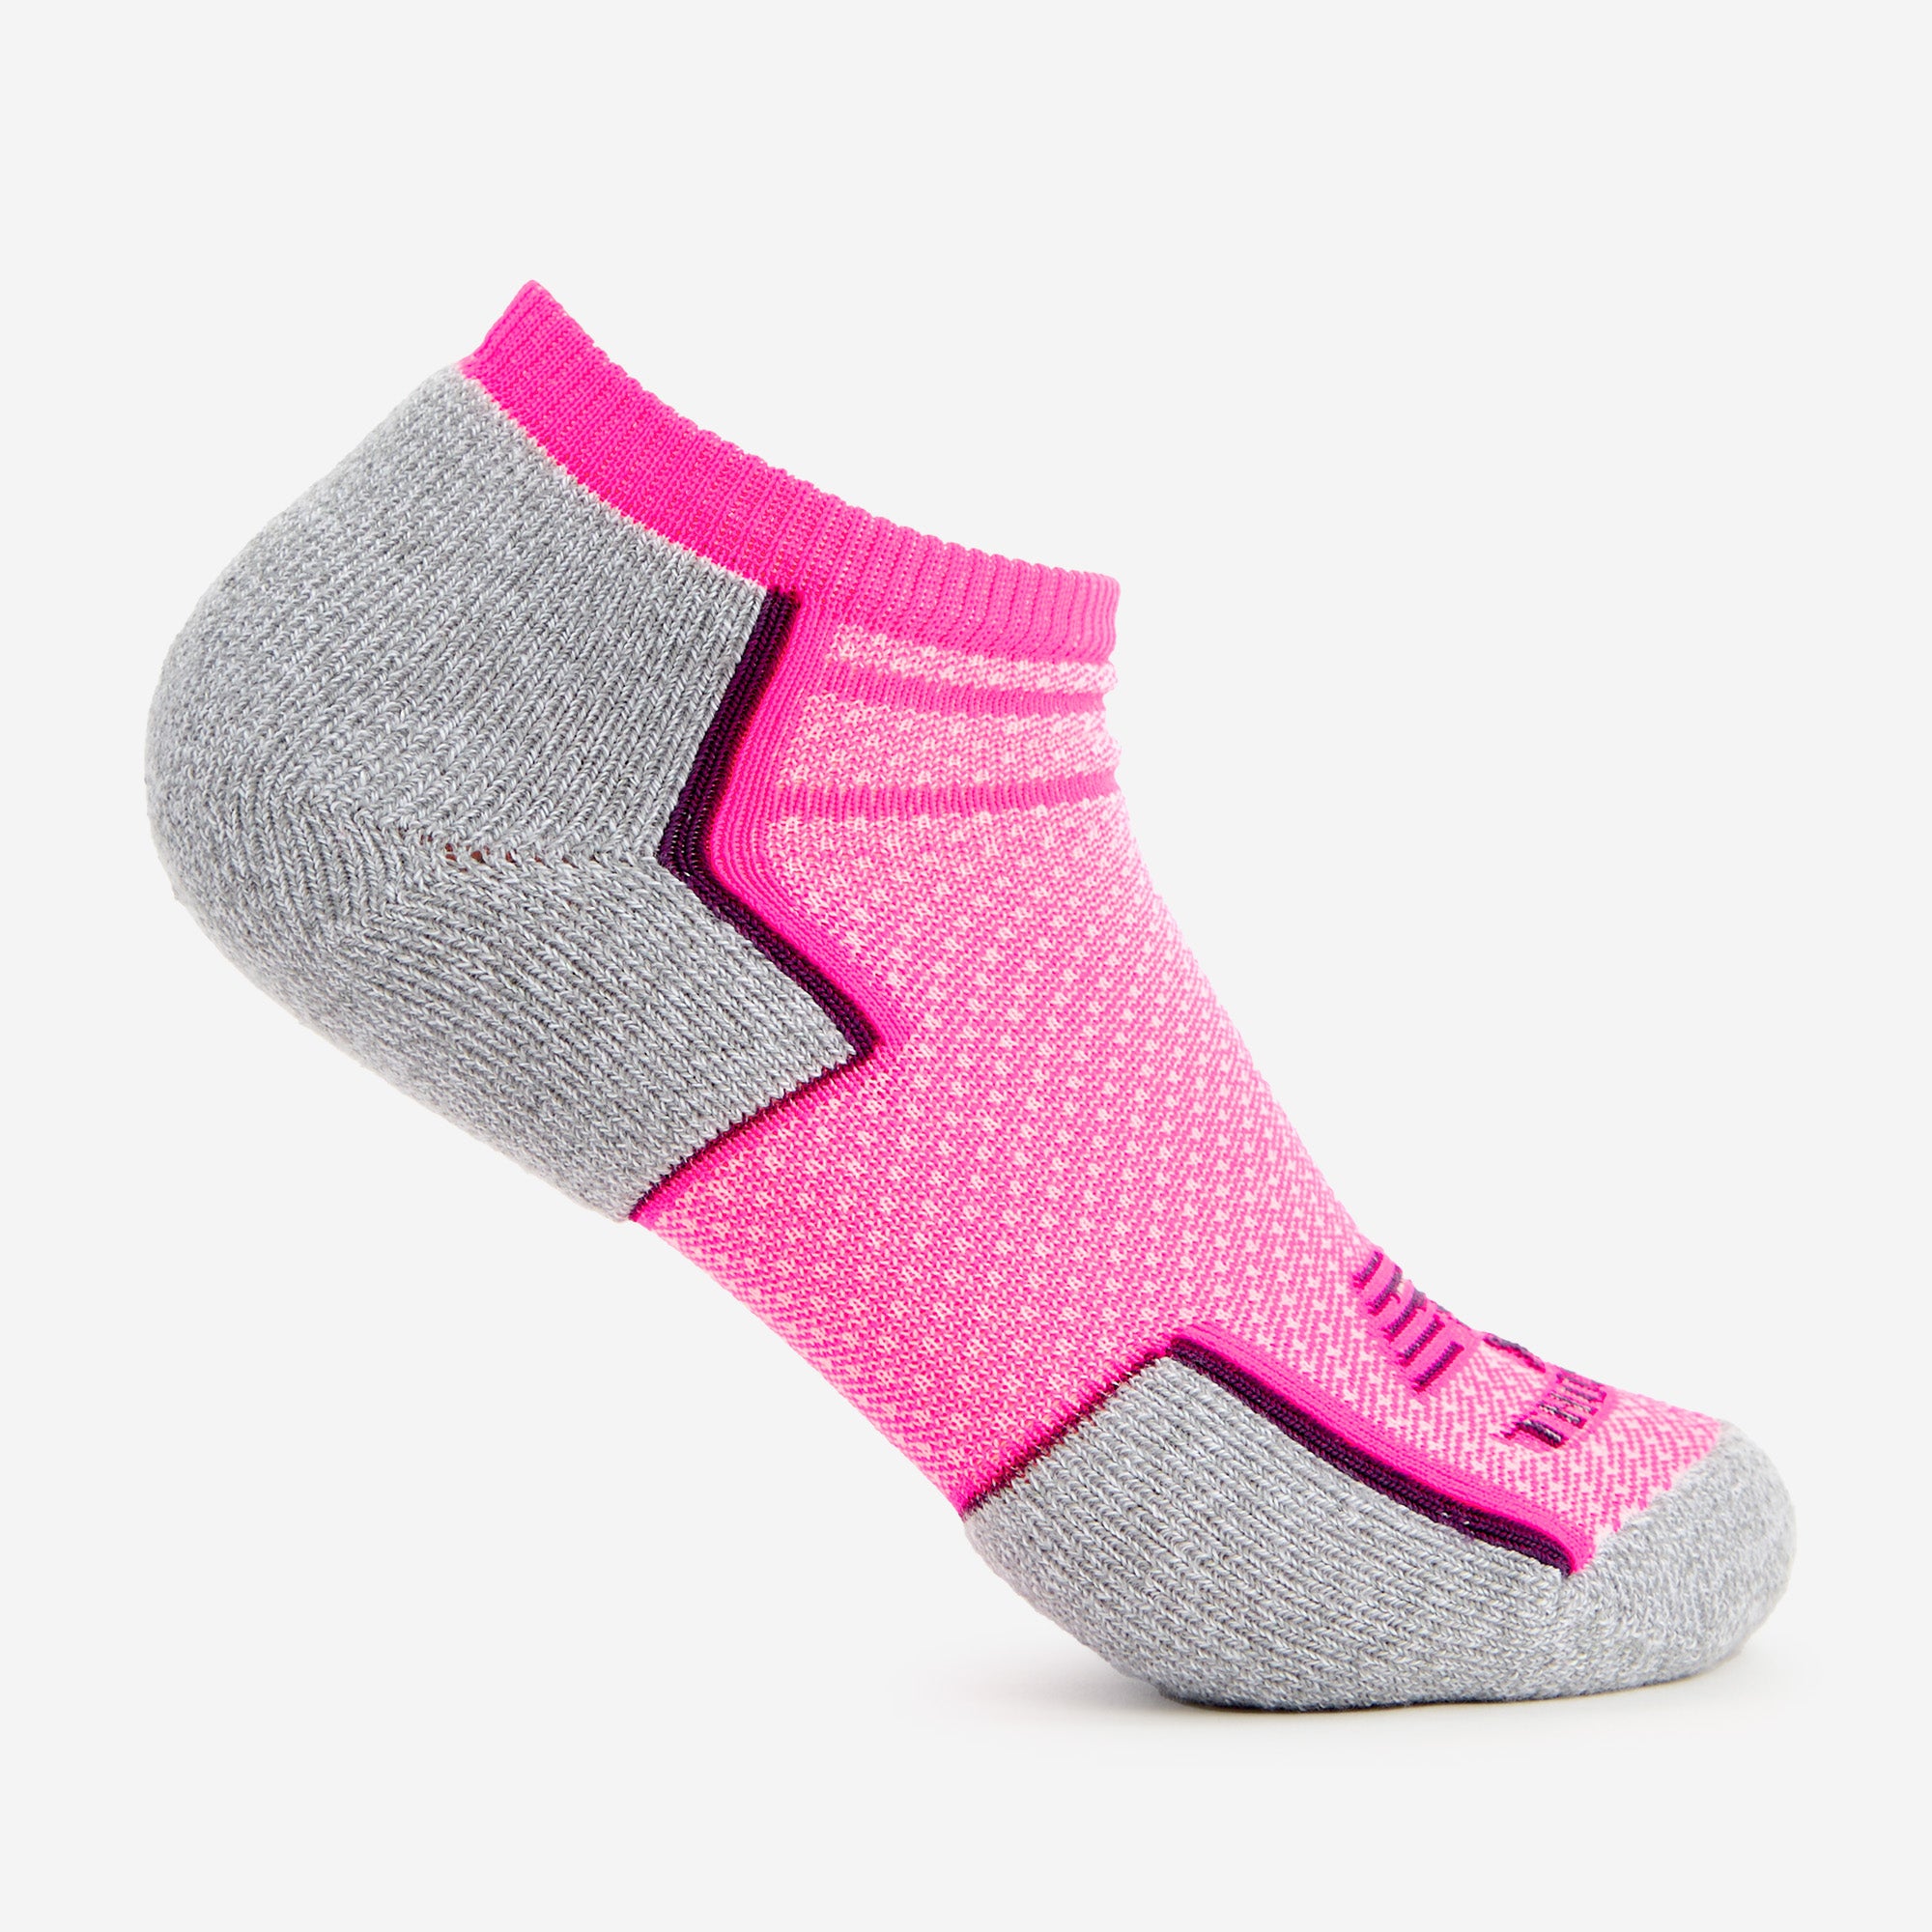 New Balance x Thorlo - Maximum Cushion Low Cut Running Socks